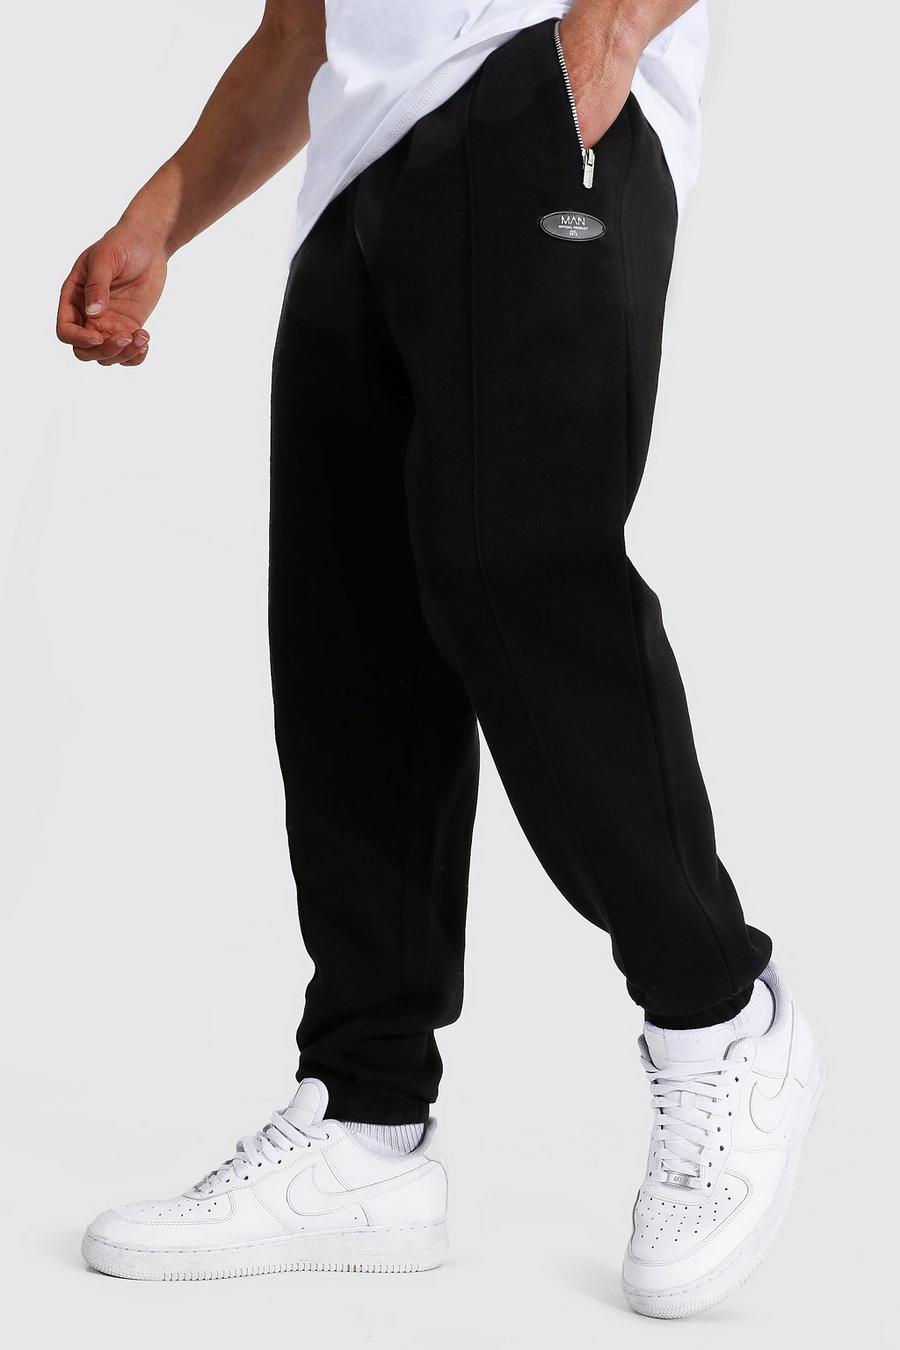 שחור מכנסי ריצה בגזרה רגילה עם קפל ותווית עם כיתוב Original Man image number 1